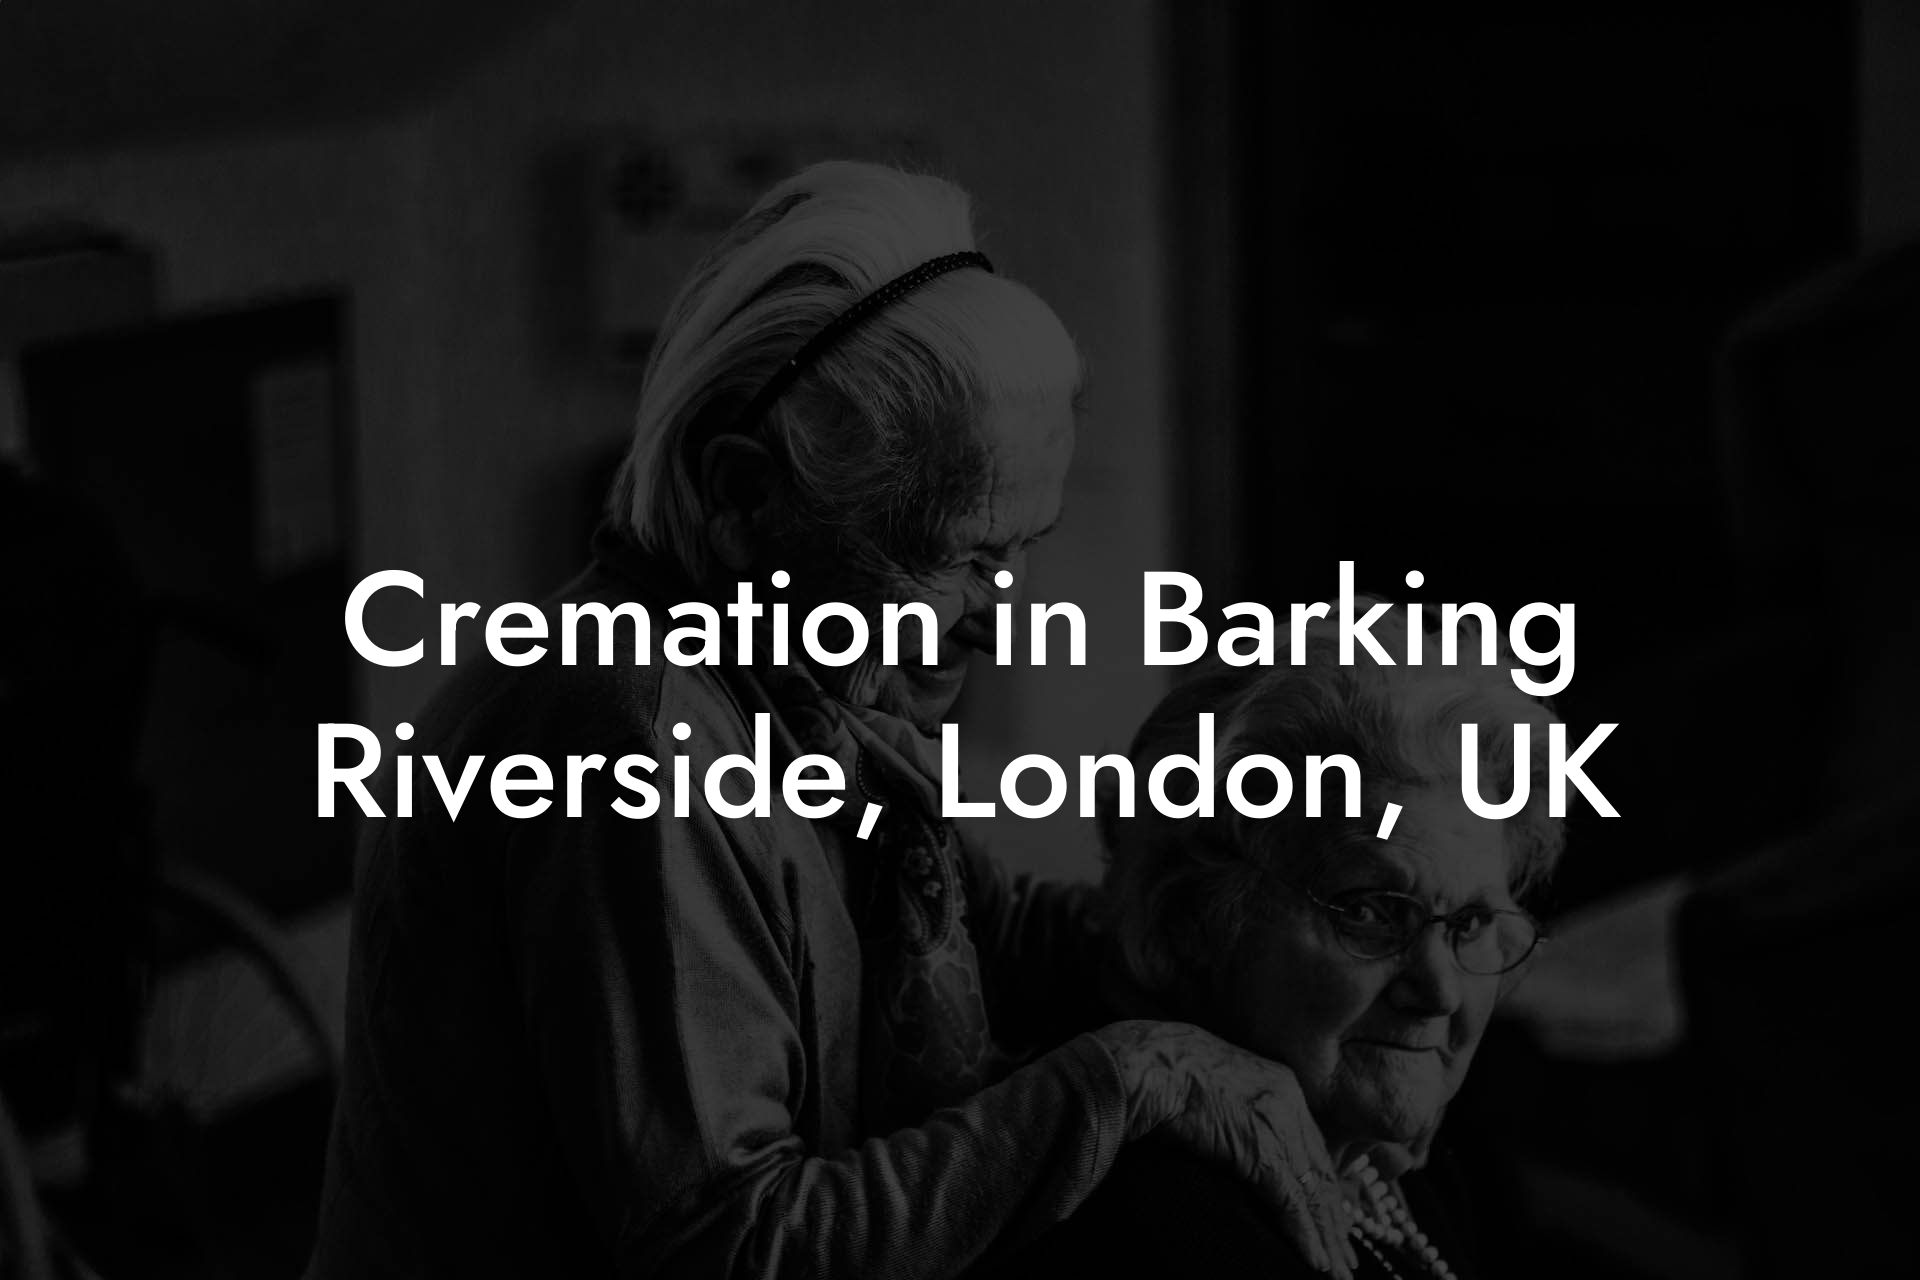 Cremation in Barking Riverside, London, UK